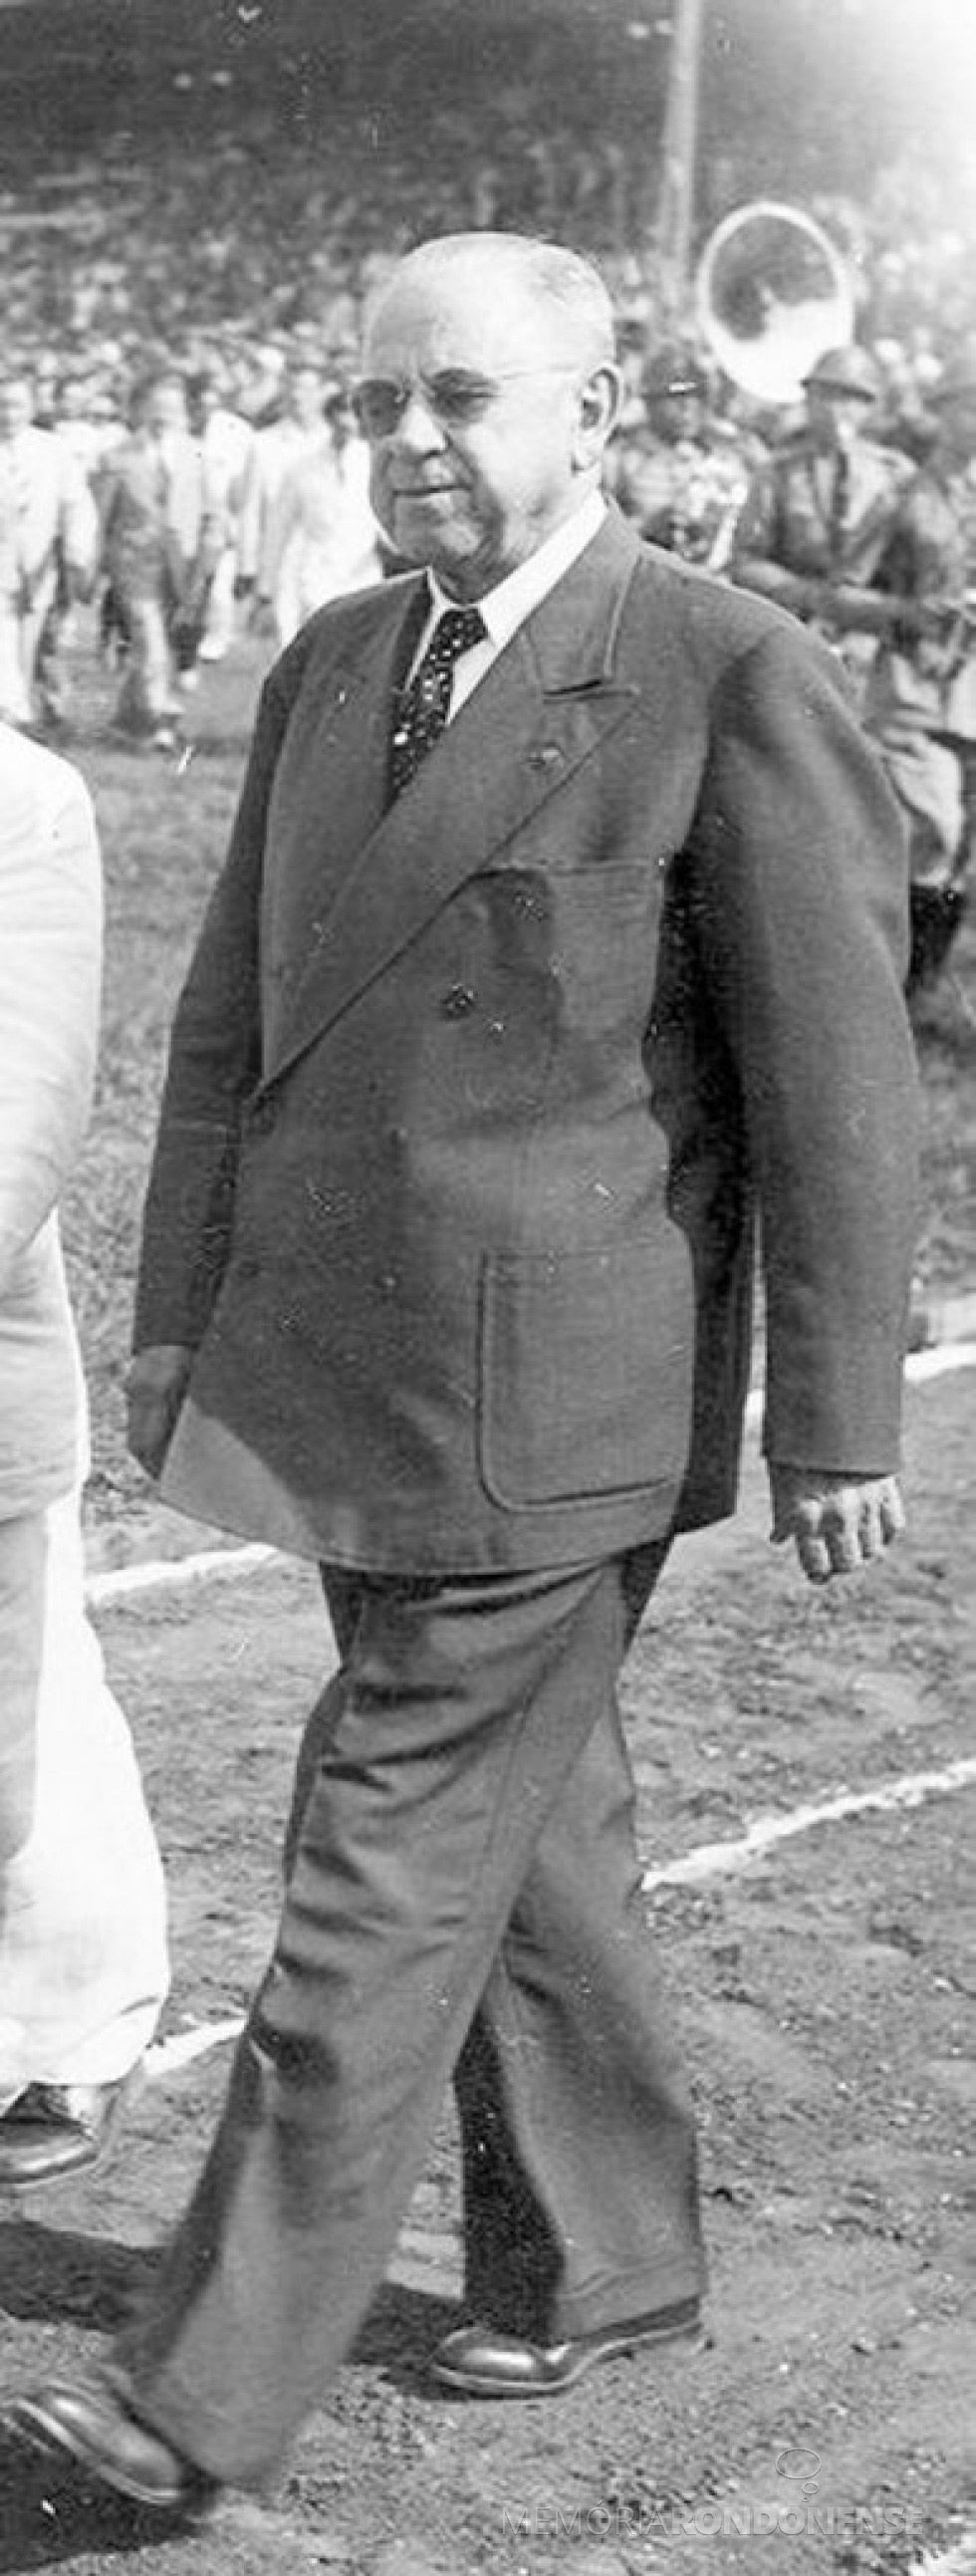 Manoel Ribas que foi interventor e governador do Paraná, entre 1932 e 1945, falecido em janeiro de 1974.
Imagem; Acervo Aroldo Murá (Curitiba ) - FOTO 5 - 
